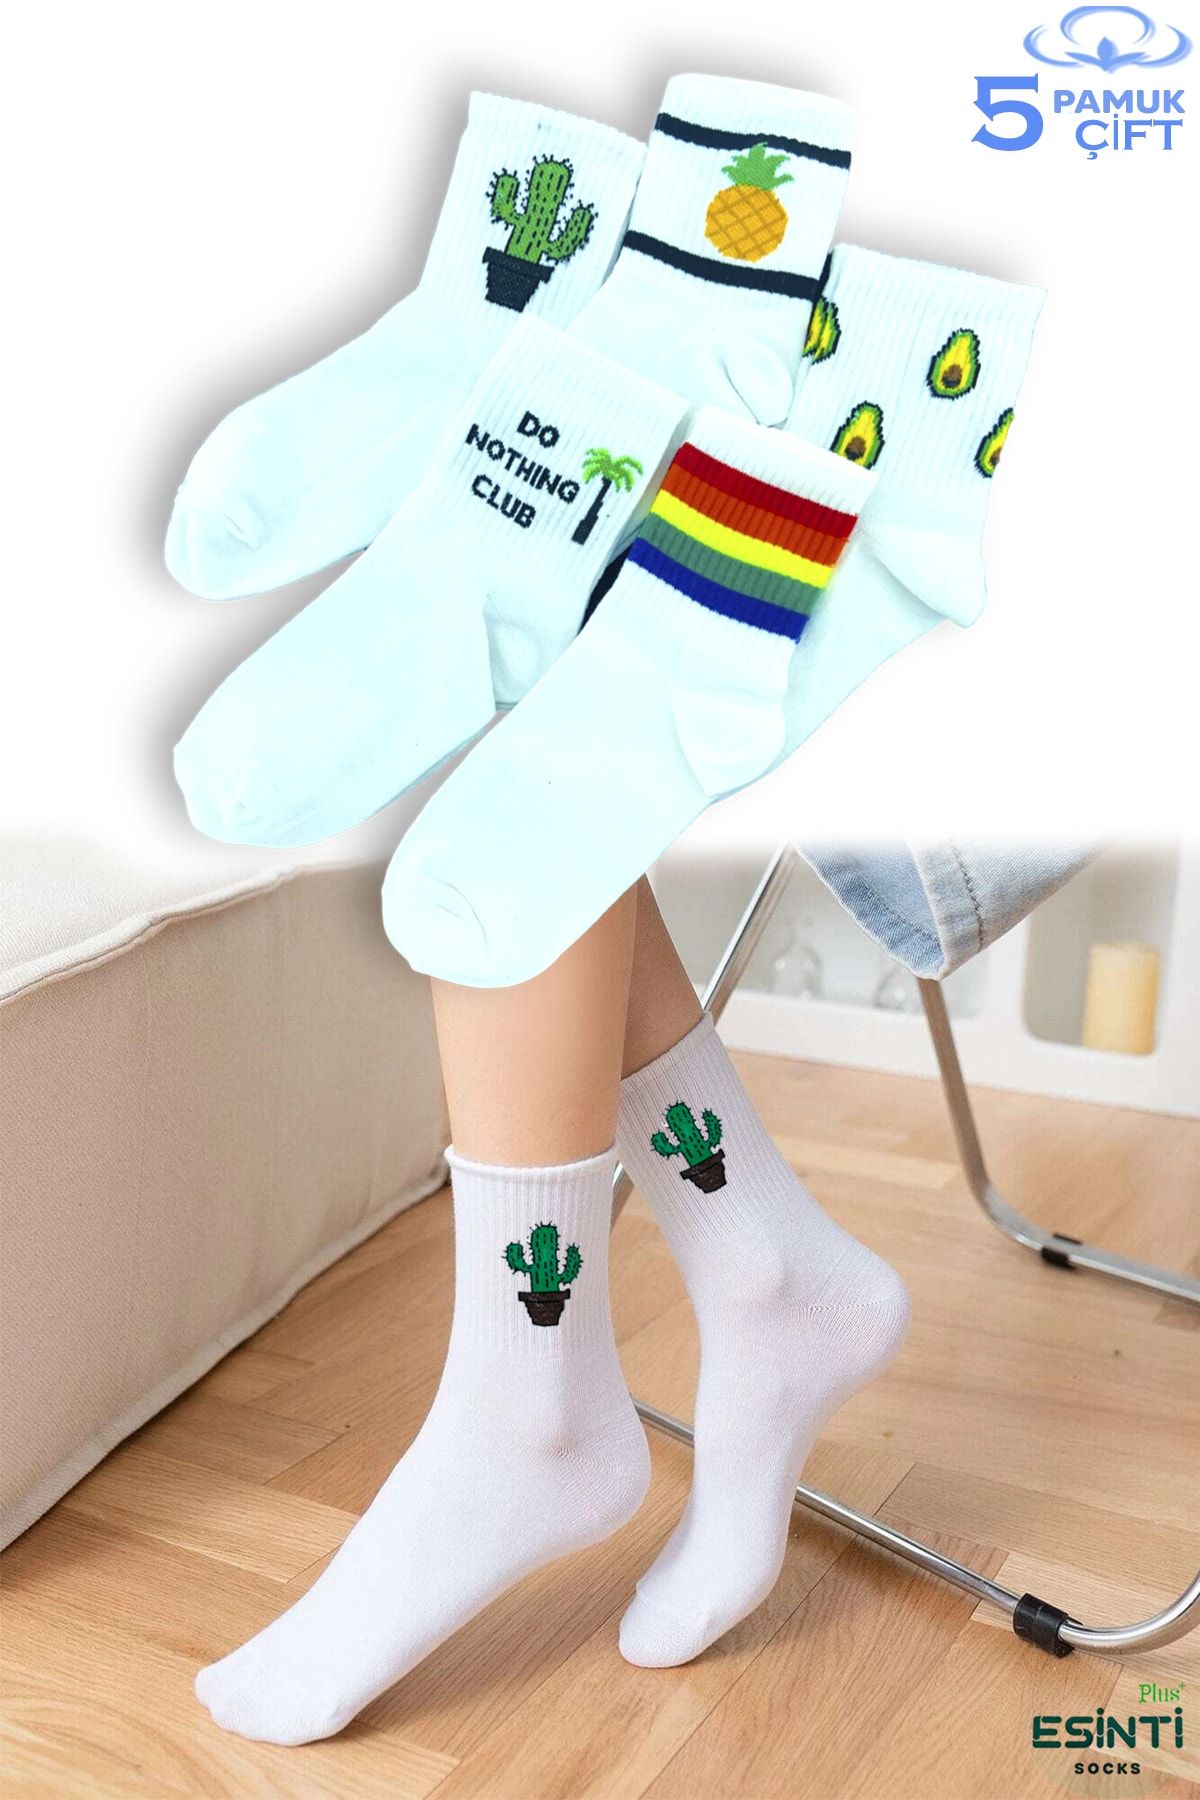 Esinti Erkek Çorap Kadın Çorap Uzun Spor Çorapları Desenli Soket Çorap Renkli Çorap 5 Adet